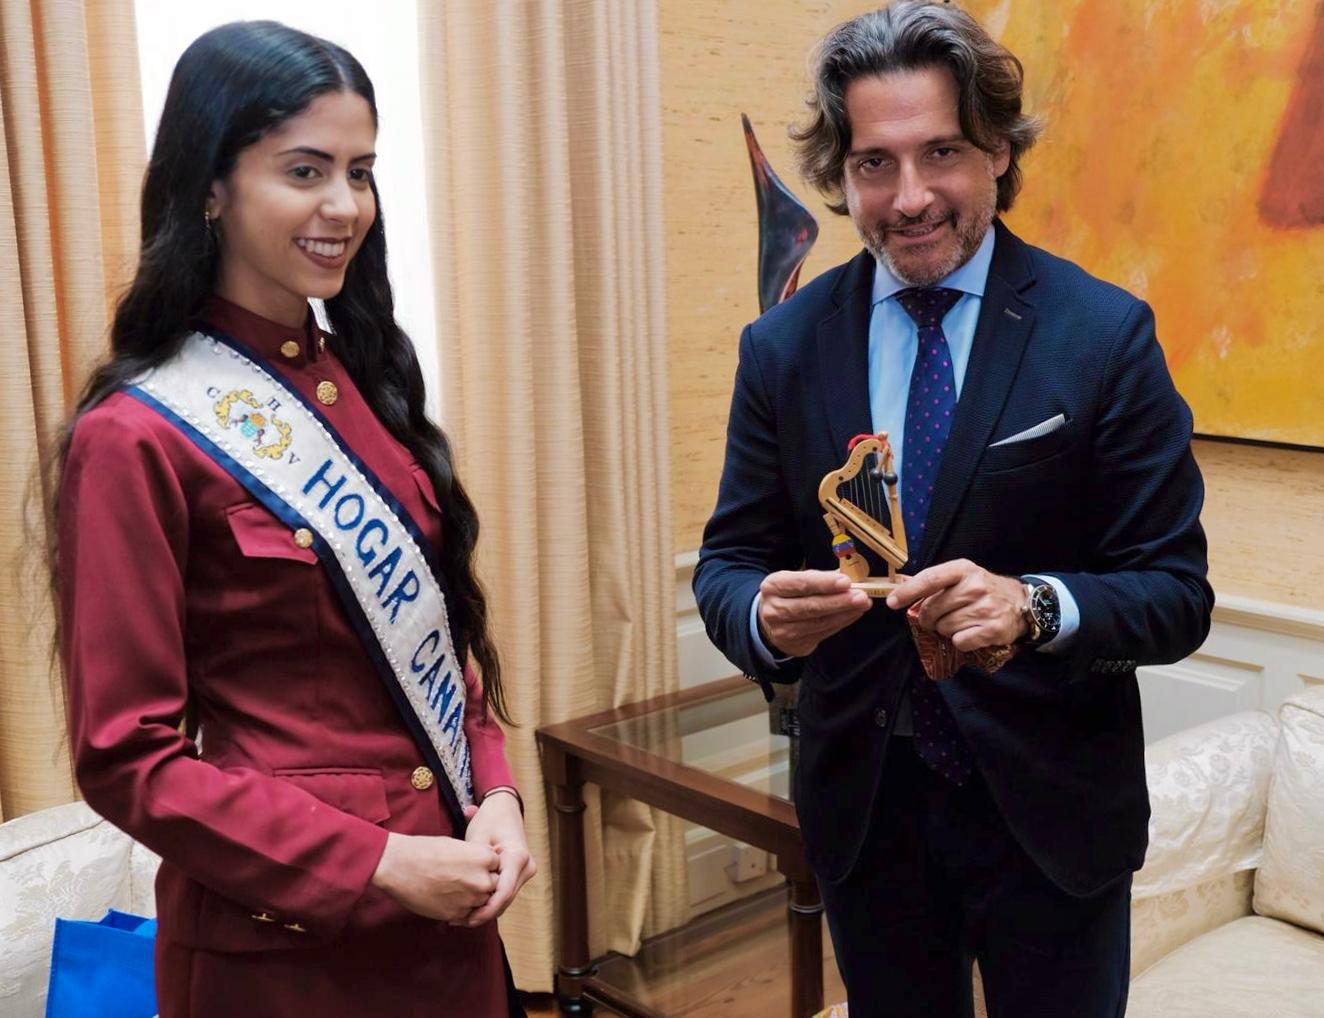 El presidente del Parlamento de Canarias con la Reina del Carnaval del Hogar Canario Venezolano